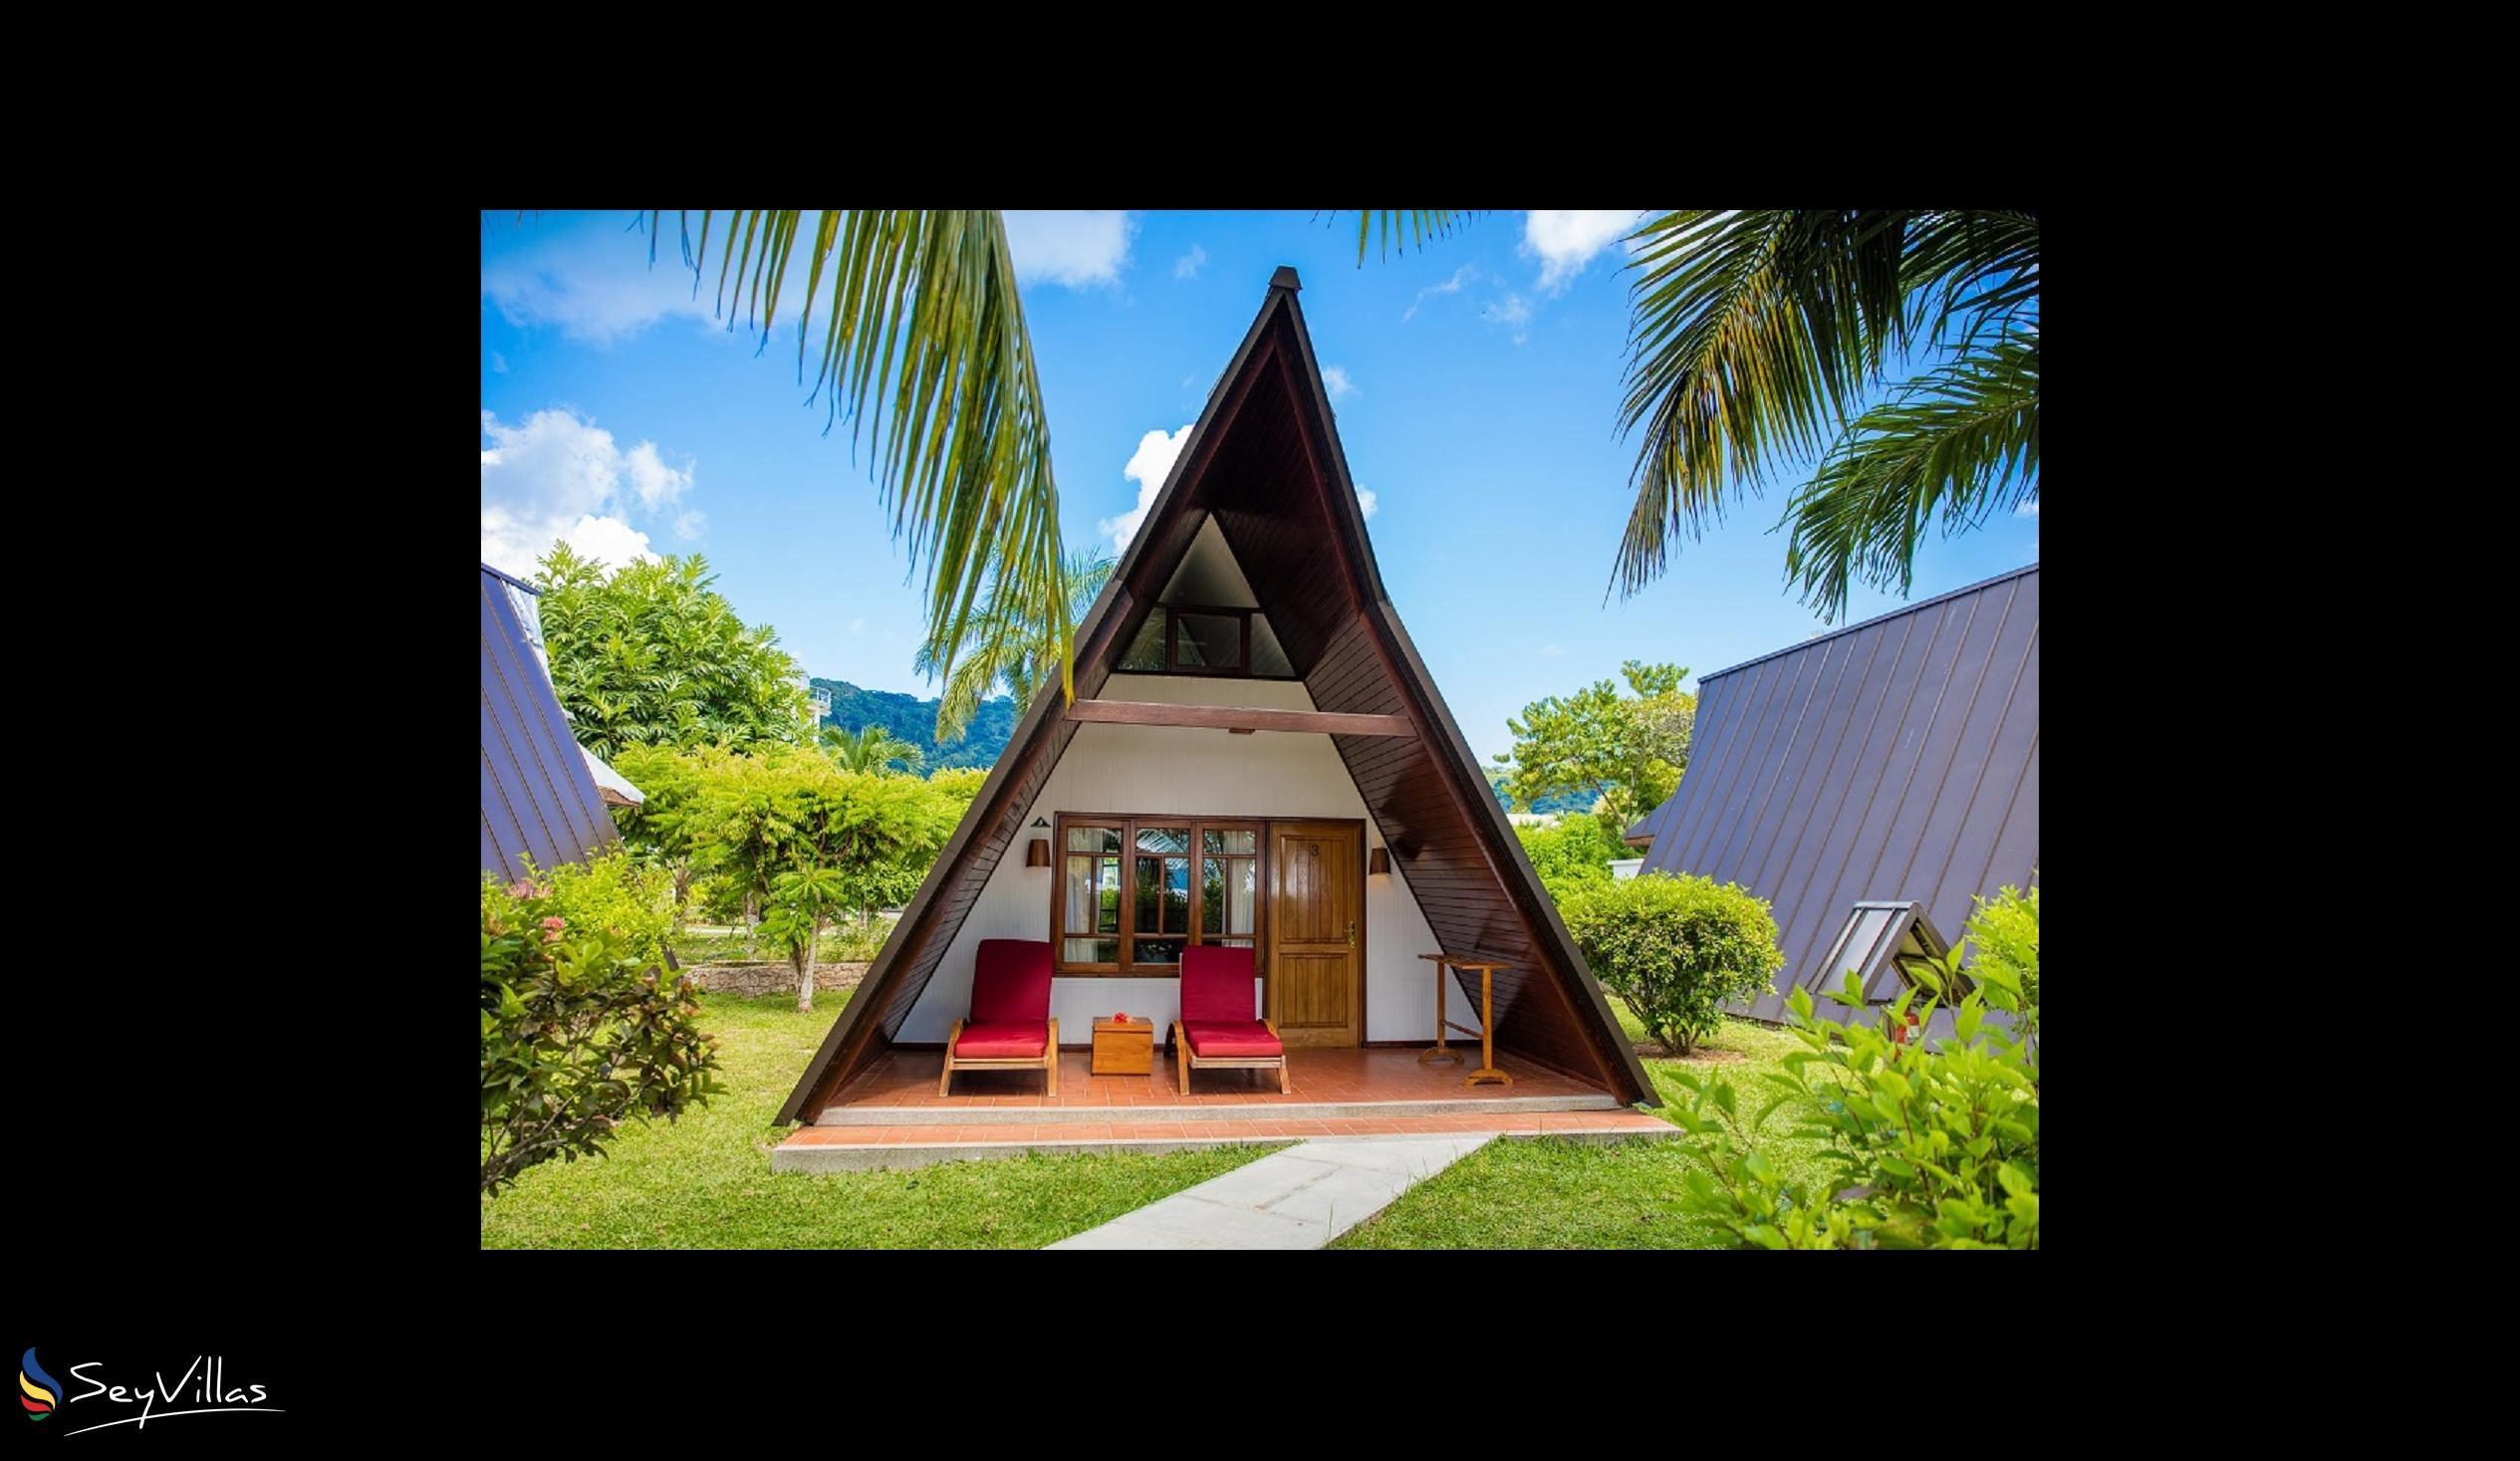 Photo 4: La Digue Island Lodge - Outdoor area - La Digue (Seychelles)